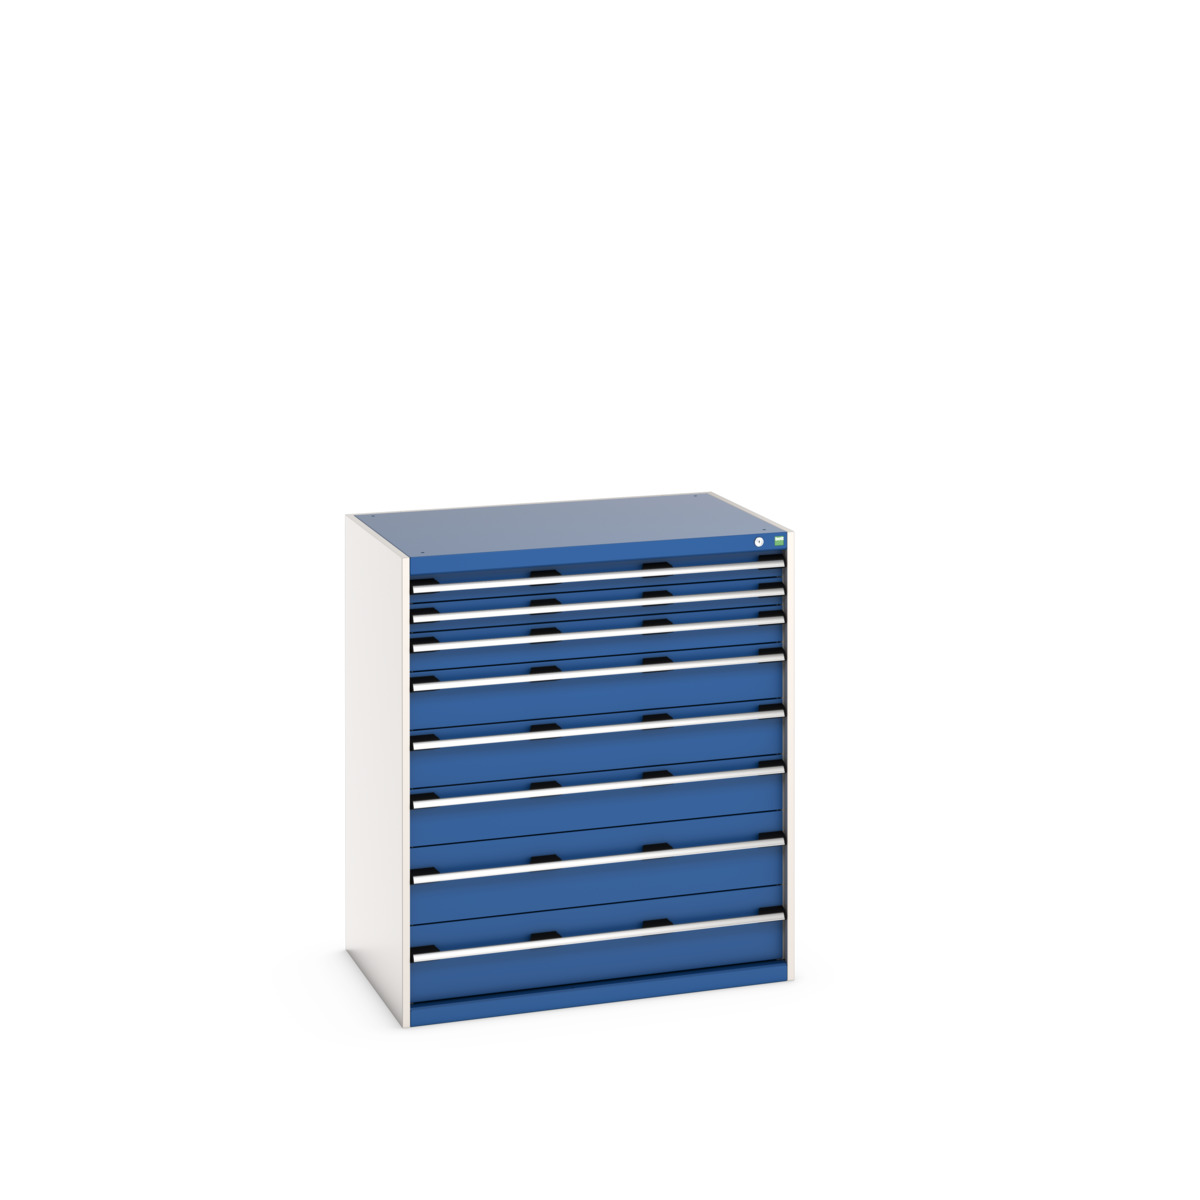 40029031.11V - cubio drawer cabinet